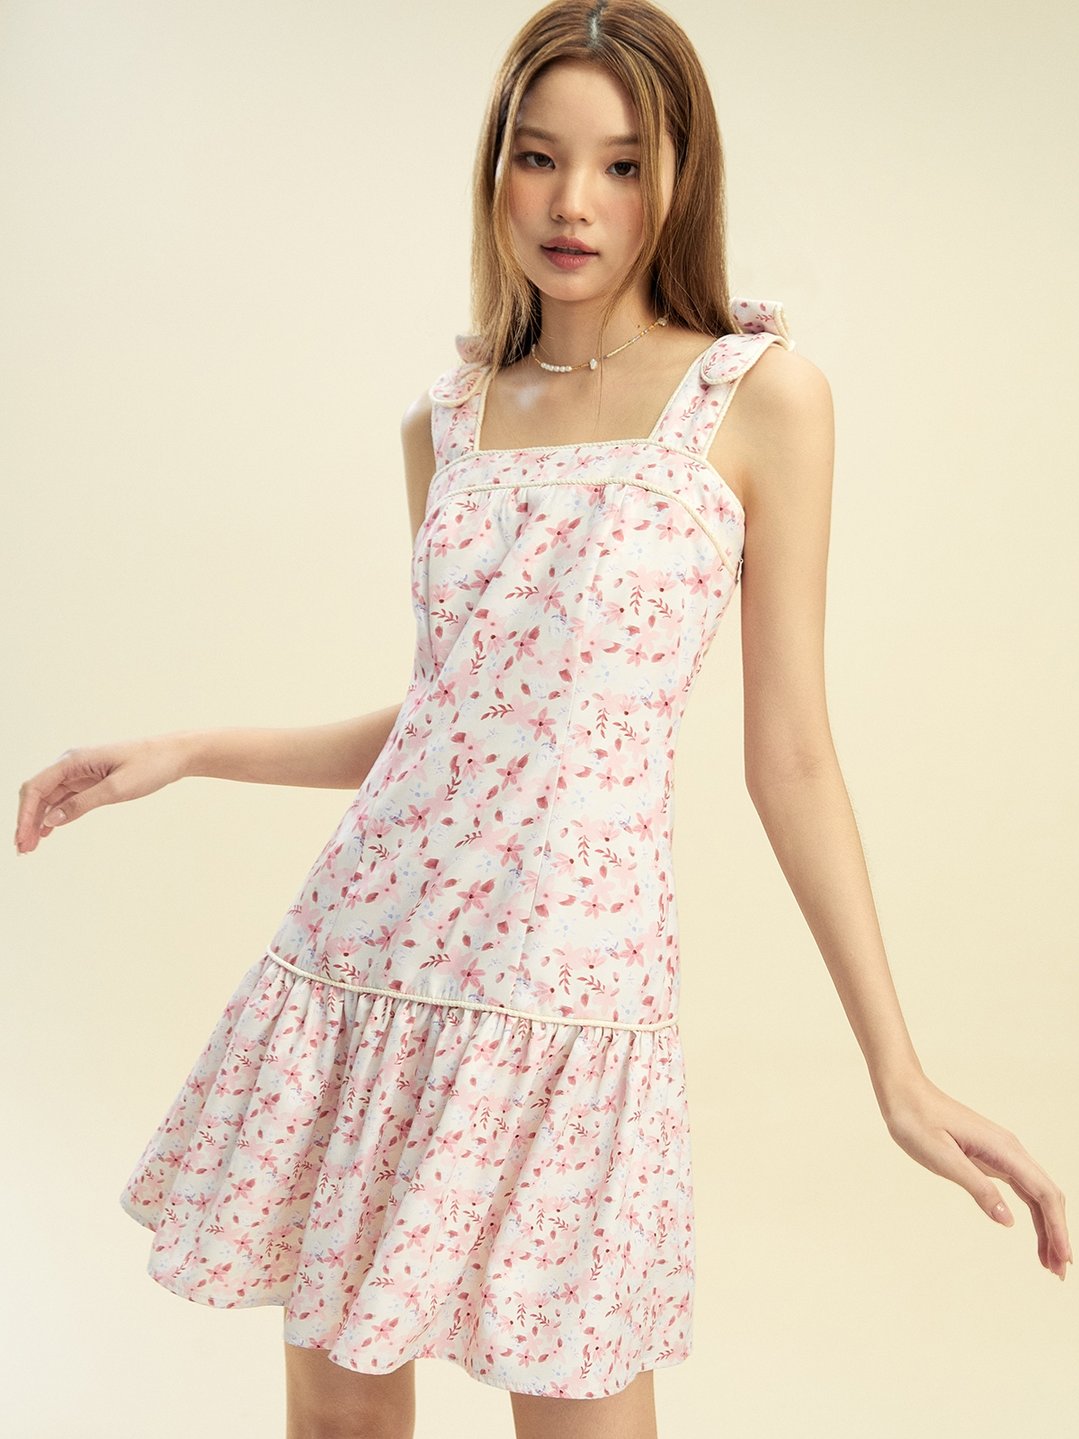 Floral Printed Mini Dress - Multi Color - Pomelo Fashion